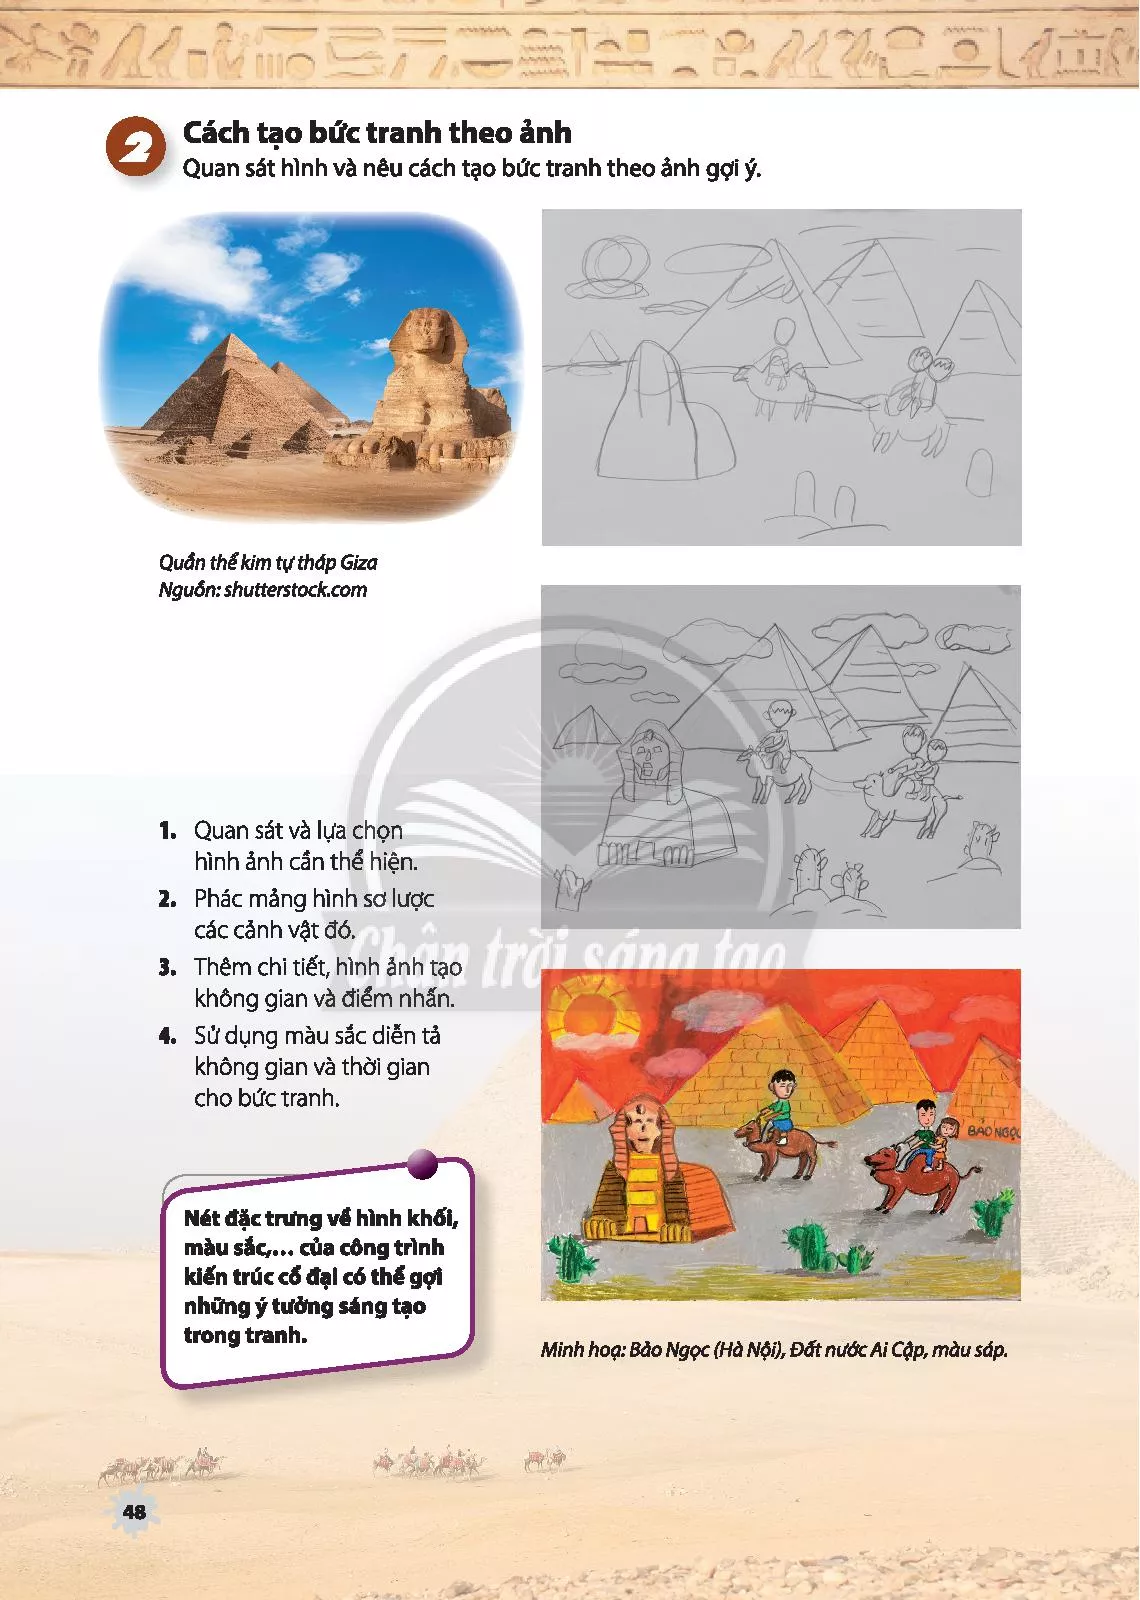 Sách giáo khoa Ai Cập cổ đại là tài liệu tham khảo hữu ích giúp học viên và sinh viên tìm hiểu về nền văn hóa này. Với nhiều thông tin hữu ích về lịch sử, văn hóa và kiến trúc, SGK Scan là công cụ tuyệt vời để đào sâu kiến thức về Ai Cập cổ đại và truyền cảm hứng cho nhiều đứa trẻ yêu mến lịch sử.